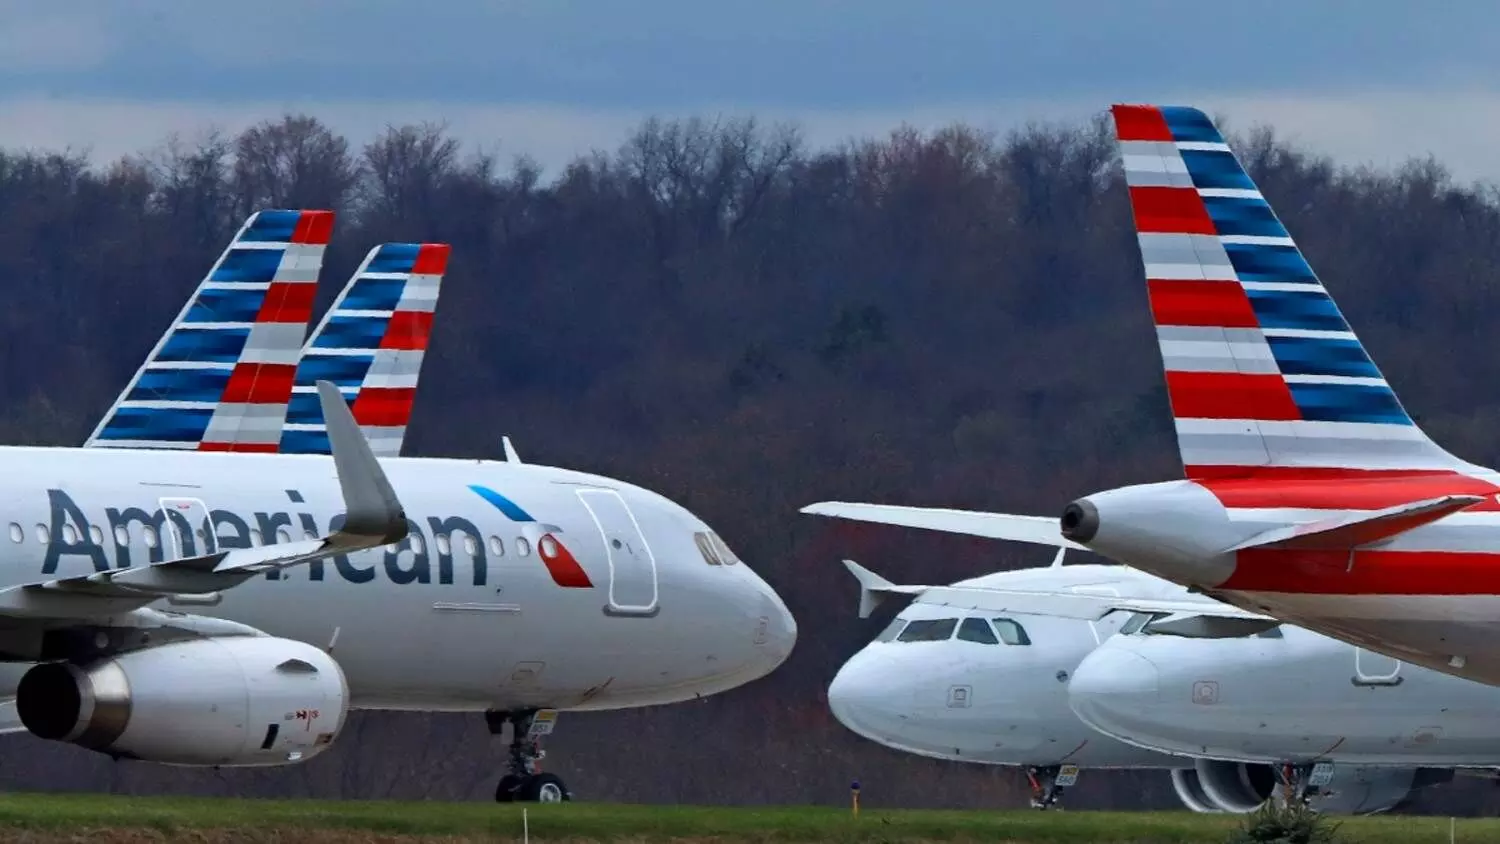 थम गया पूरा अमेरिका: विमान सेवाएं बंद, हज़ारों उड़ानों पर असर